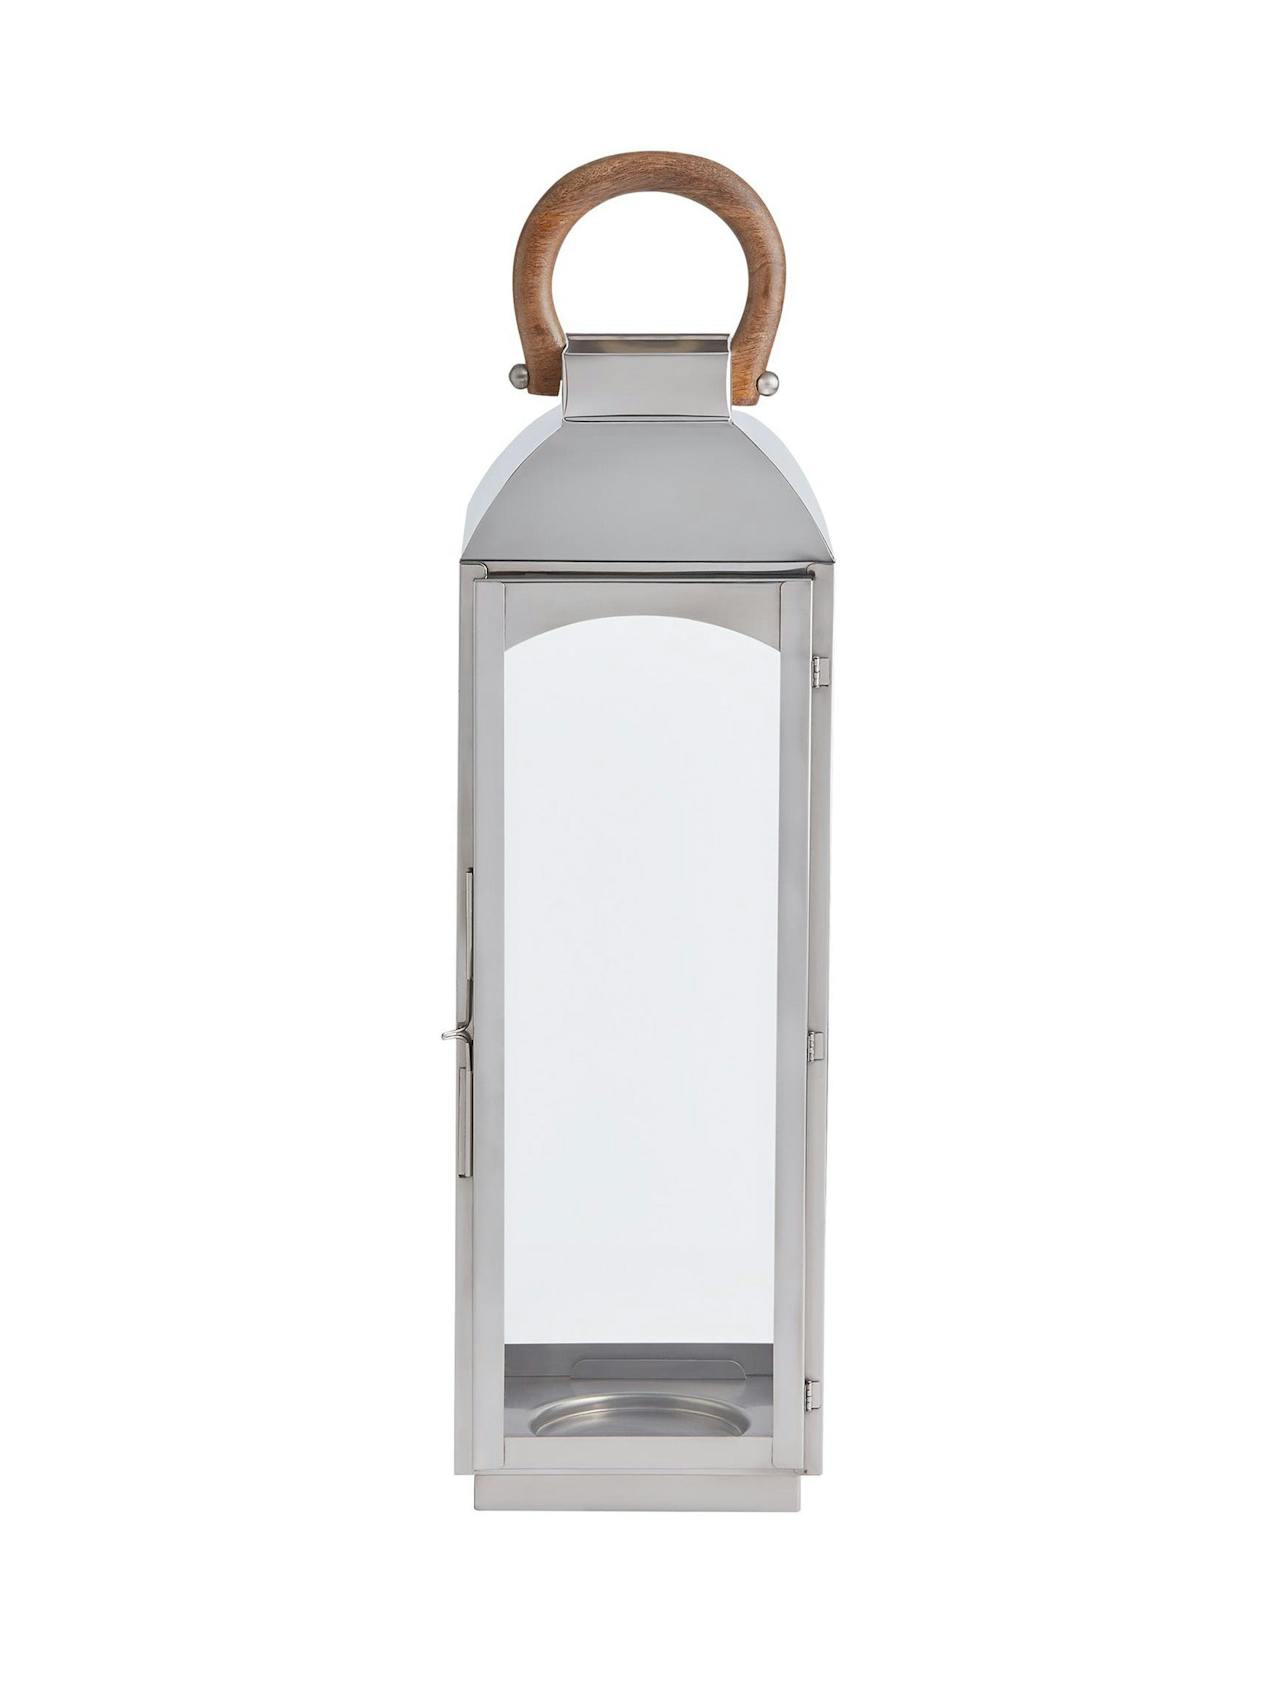 Large lantern candle holder